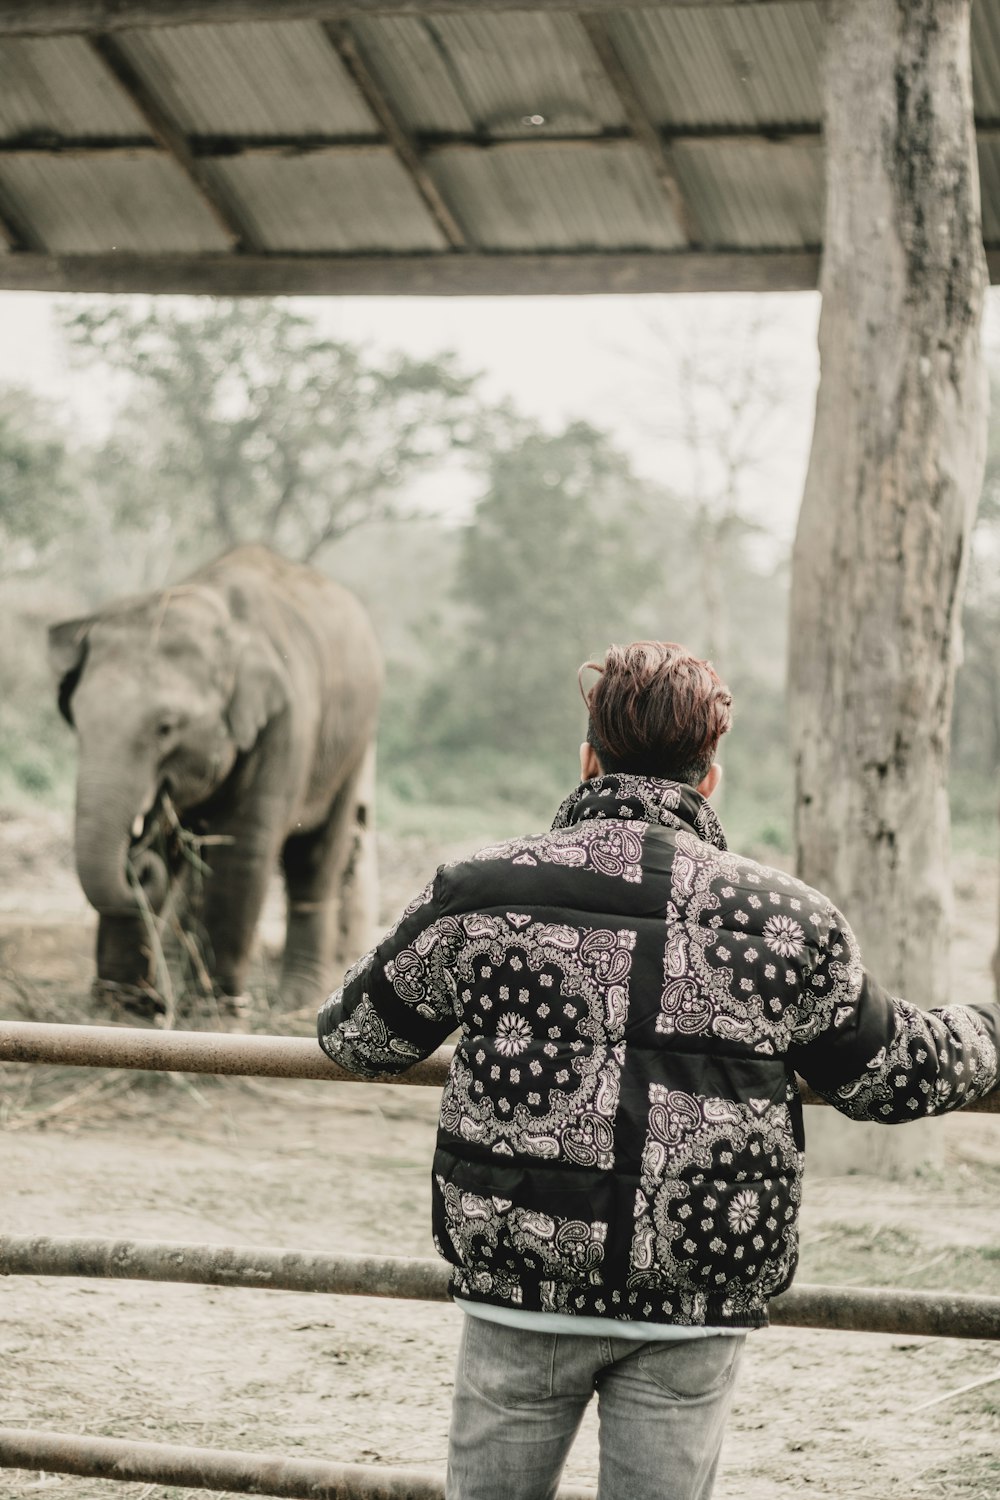 Ein Mann steht vor einem Elefanten hinter einem Zaun